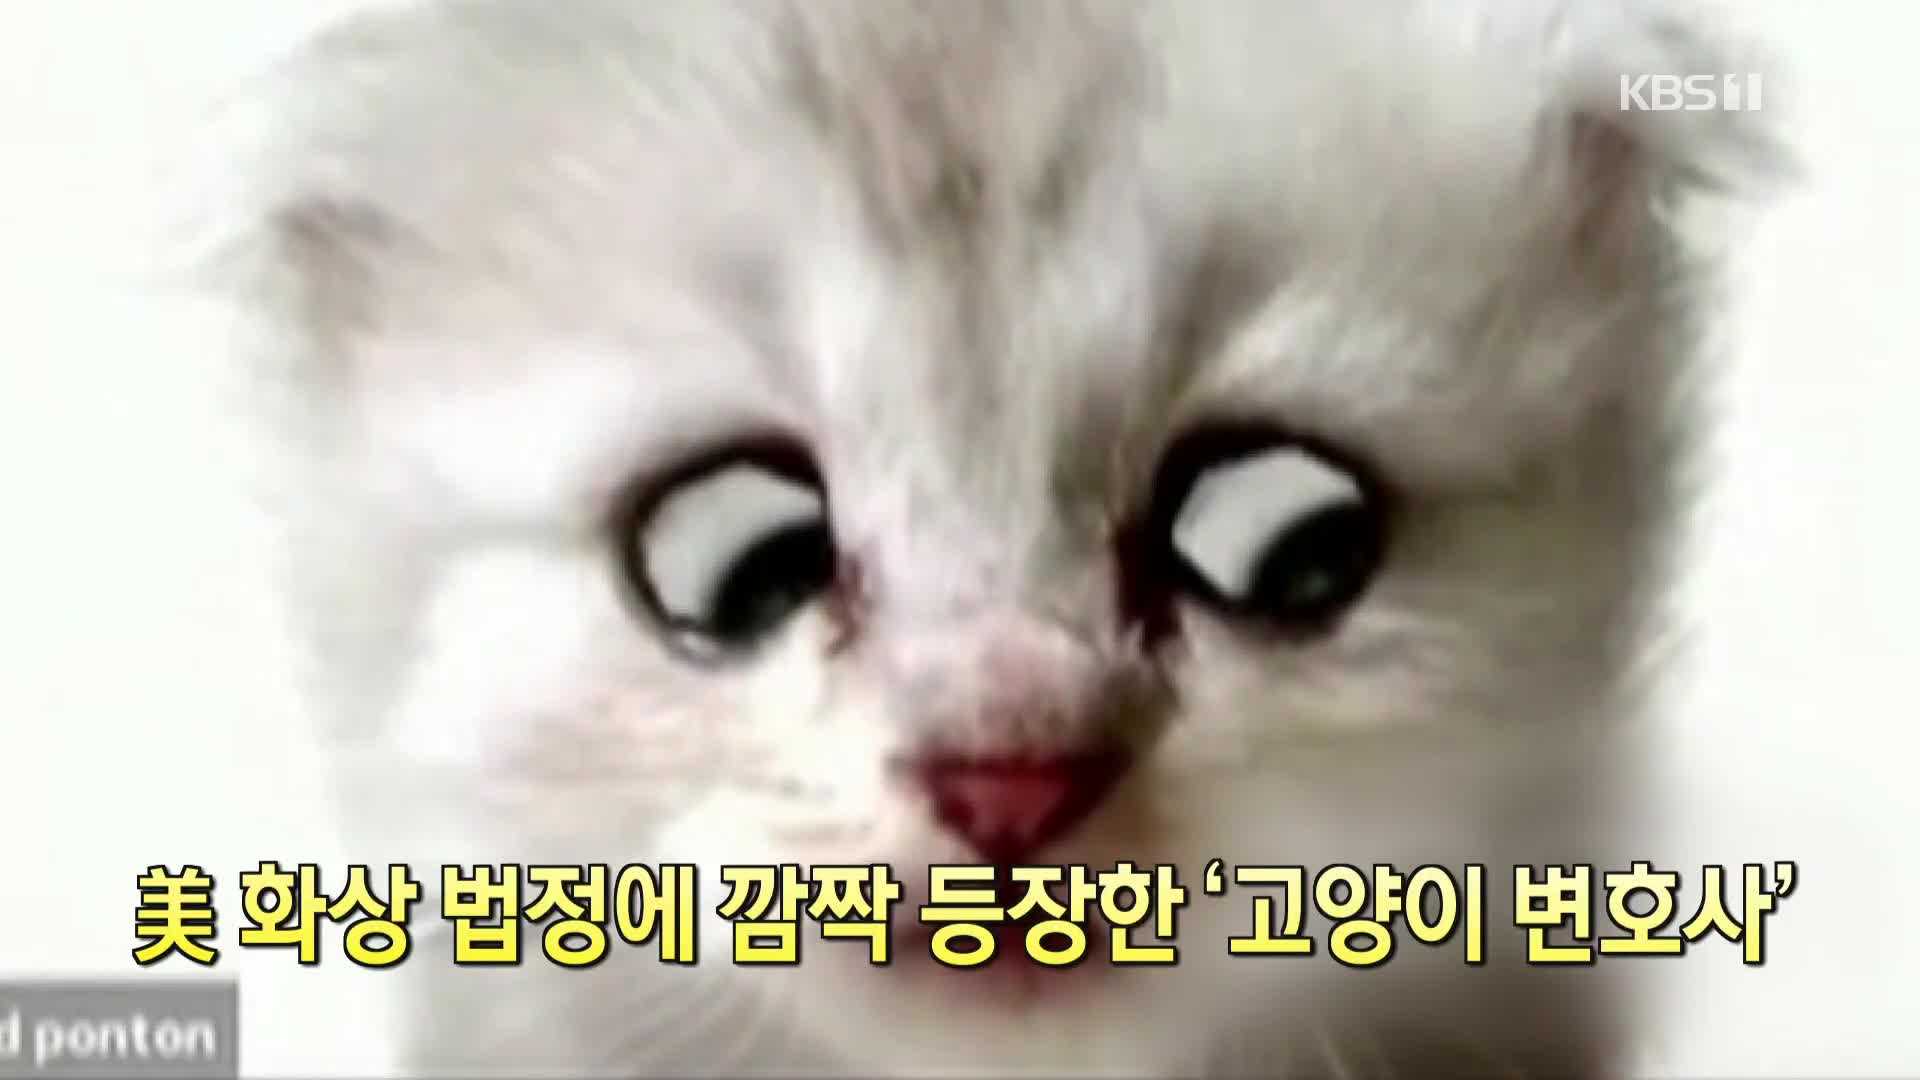 [코로나19 국제뉴스] 美 화상 법정에 깜짝 등장한 ‘고양이 변호사’